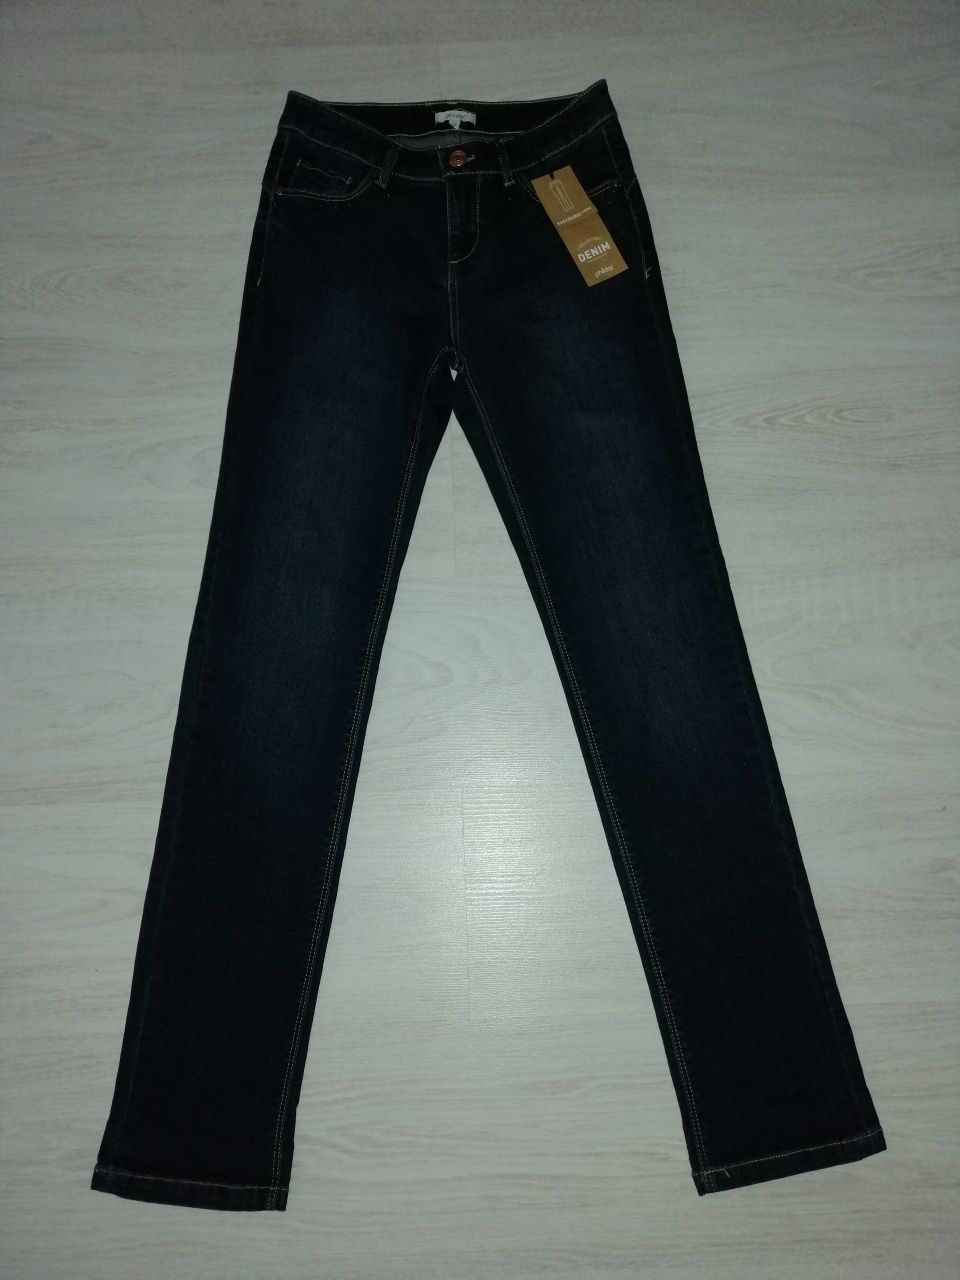 Nowe jeansy. Rozmiar 36